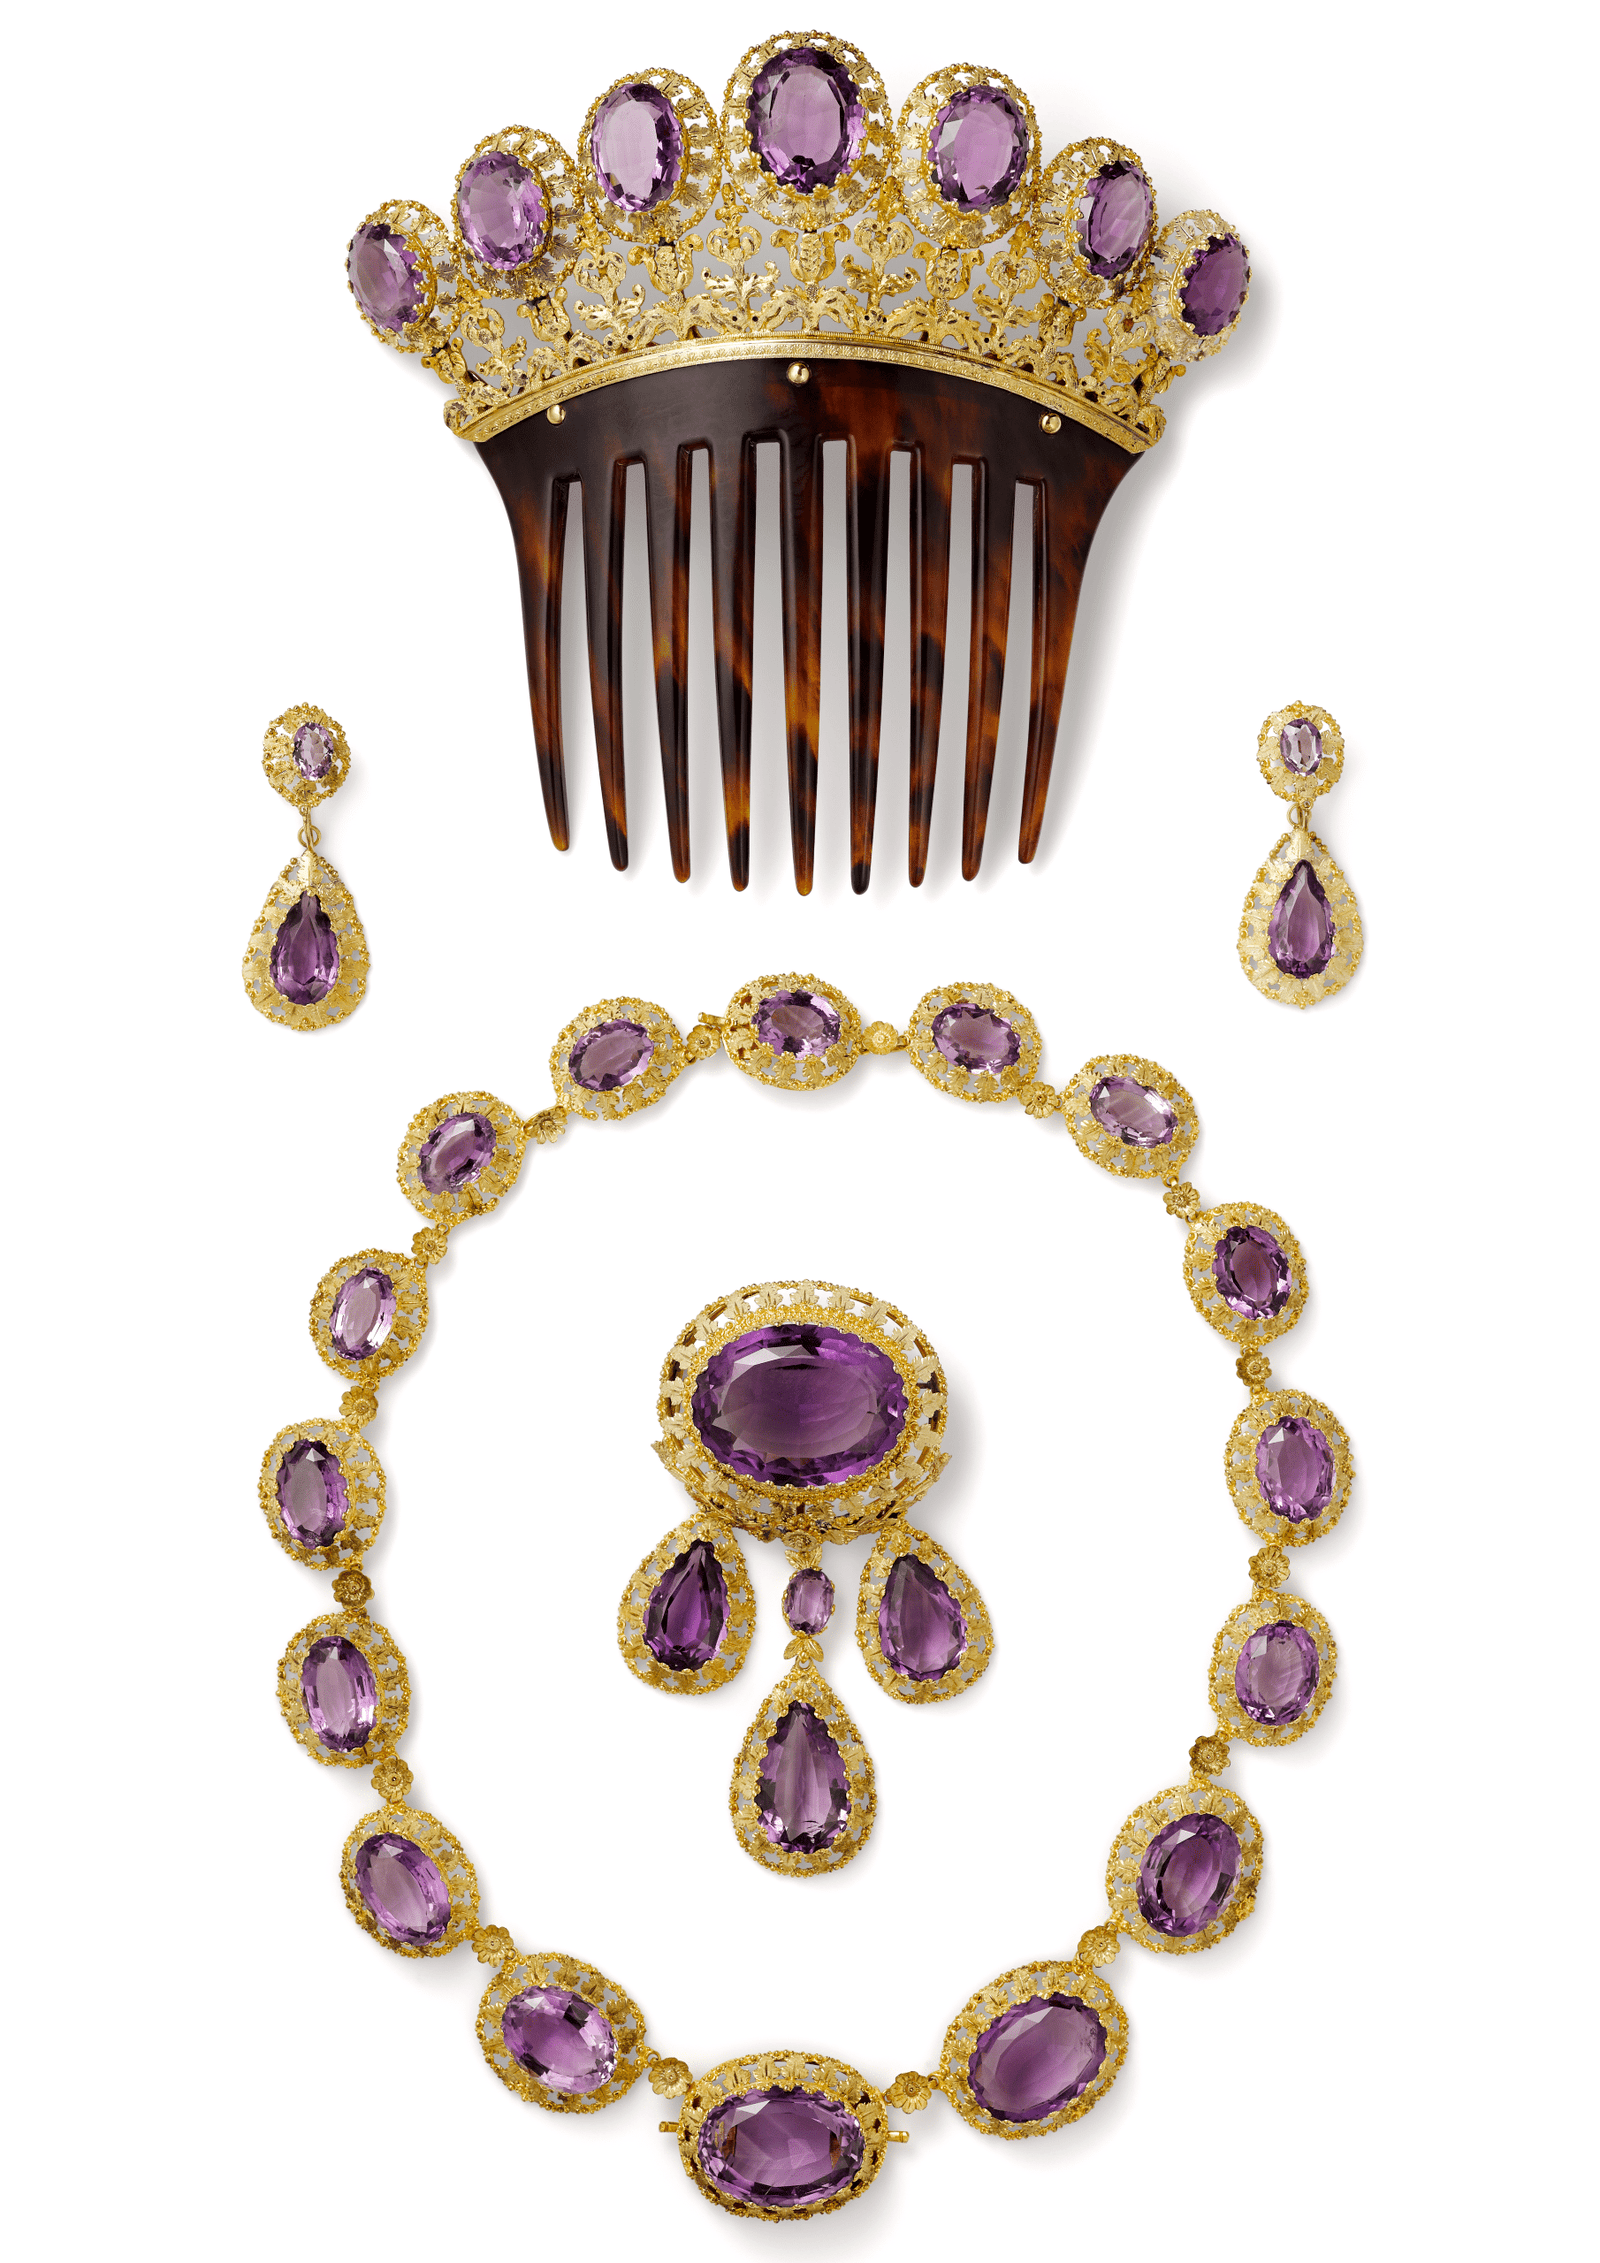 Парюра Cartier Париж около 1850 г. Золото аметисты овальной и грушевидной формы.